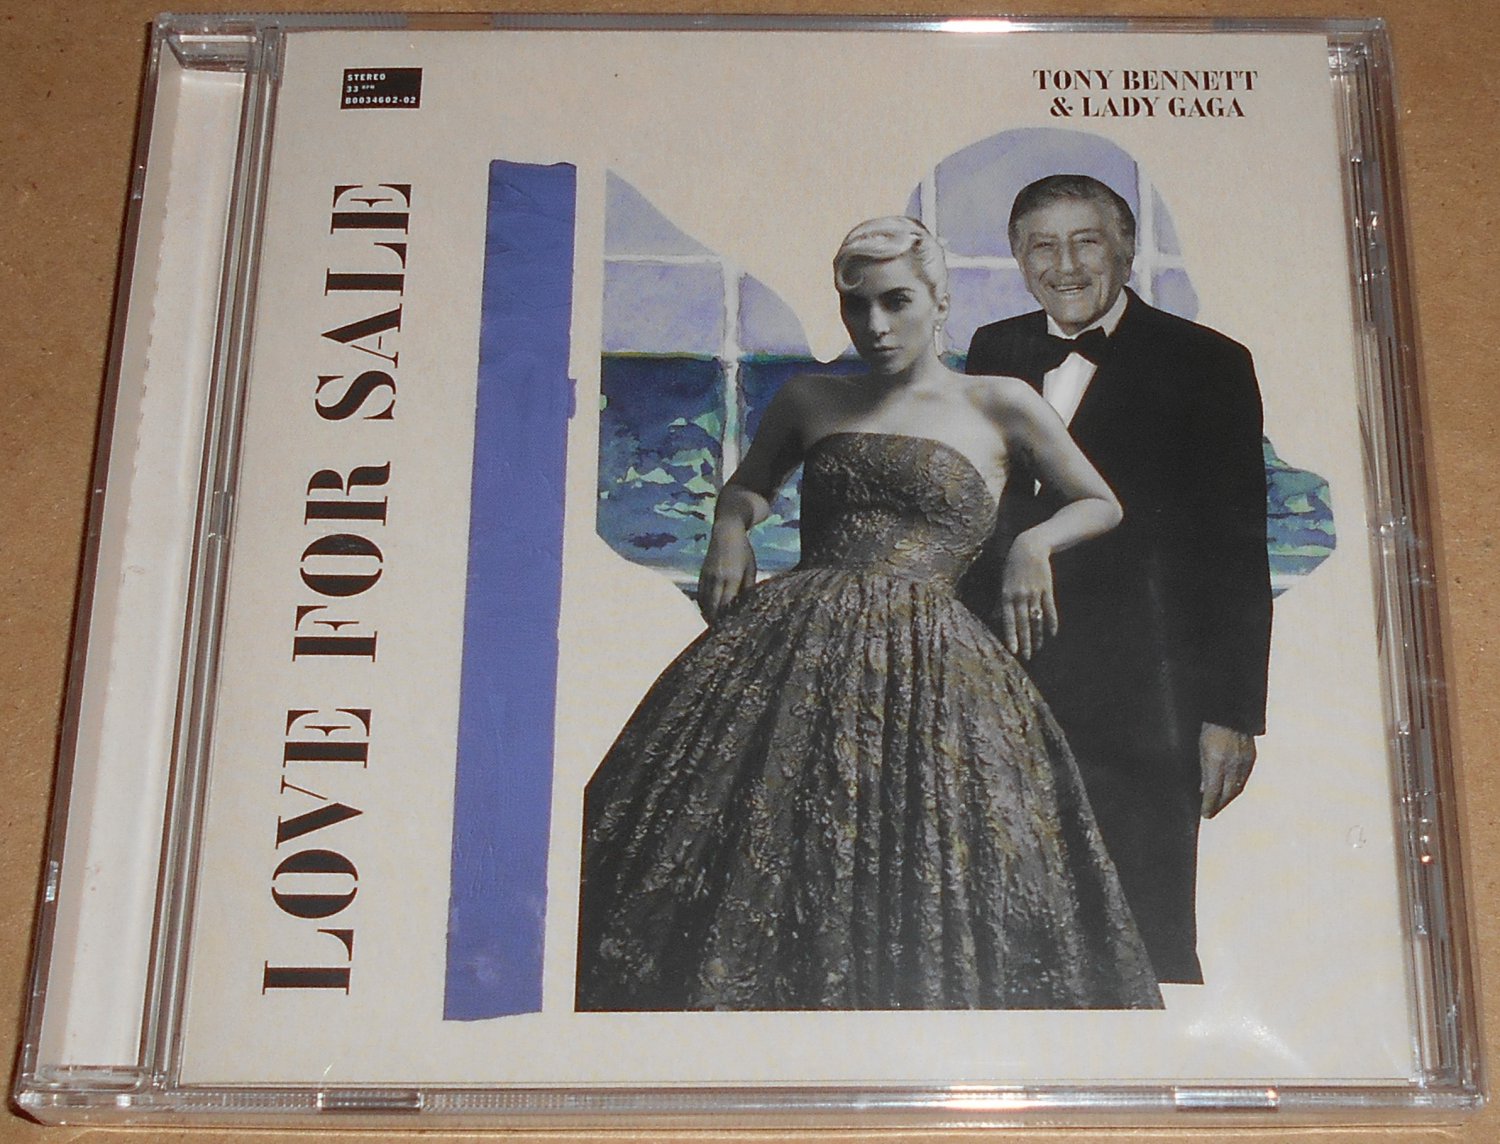 Tony Bennett Lady Gaga Love For Sale Alternate Cover #2 CD Variant Cole Porter